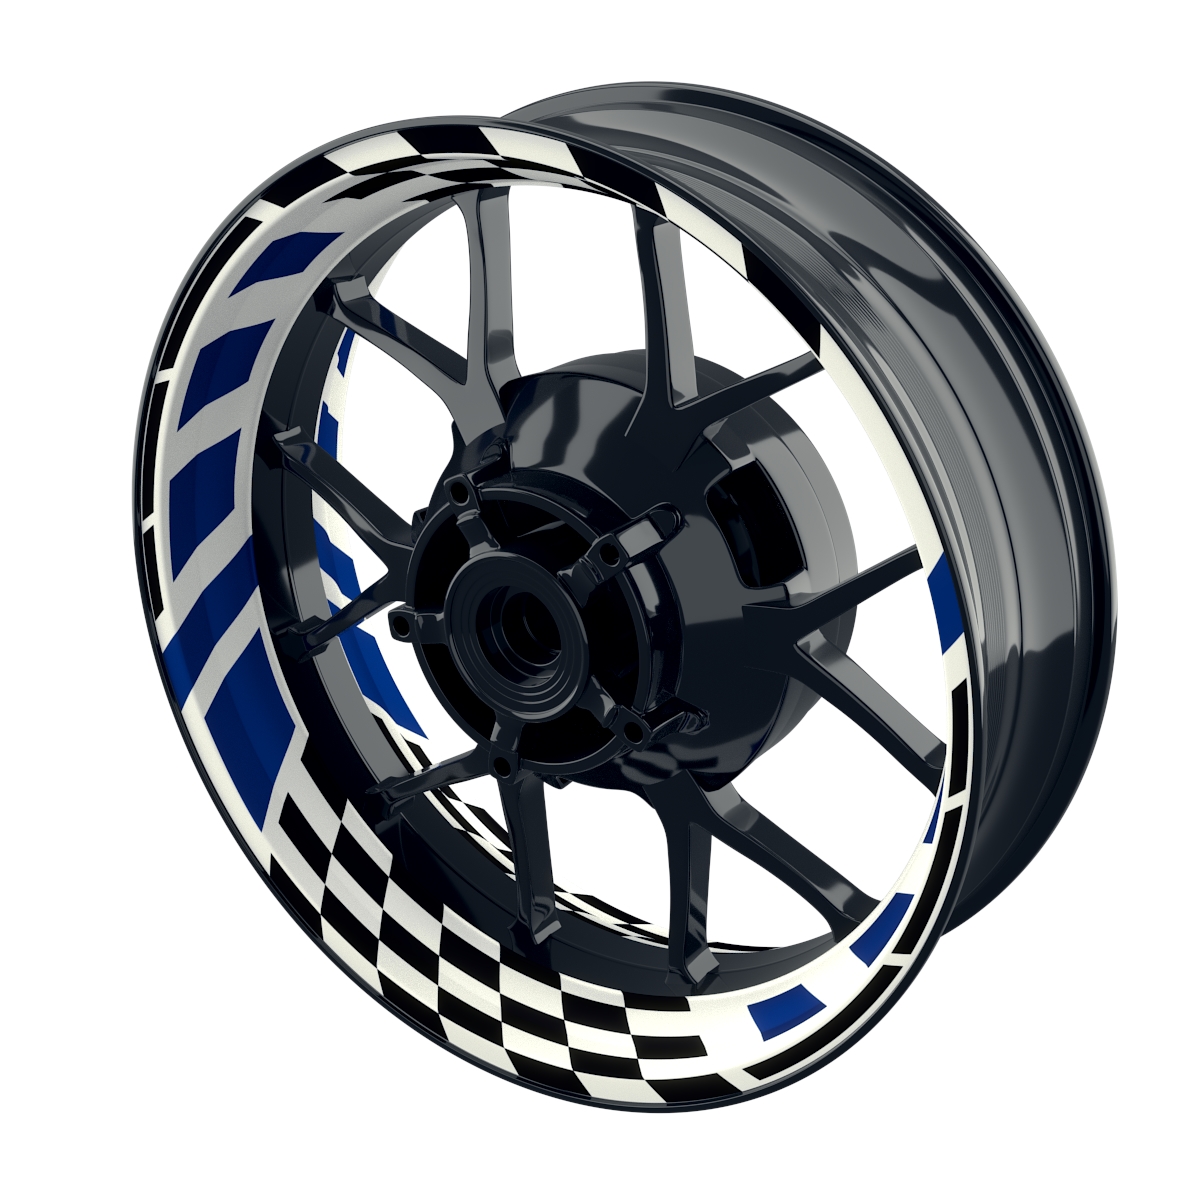 RACE white Rim Decals  Wheelsticker Premium